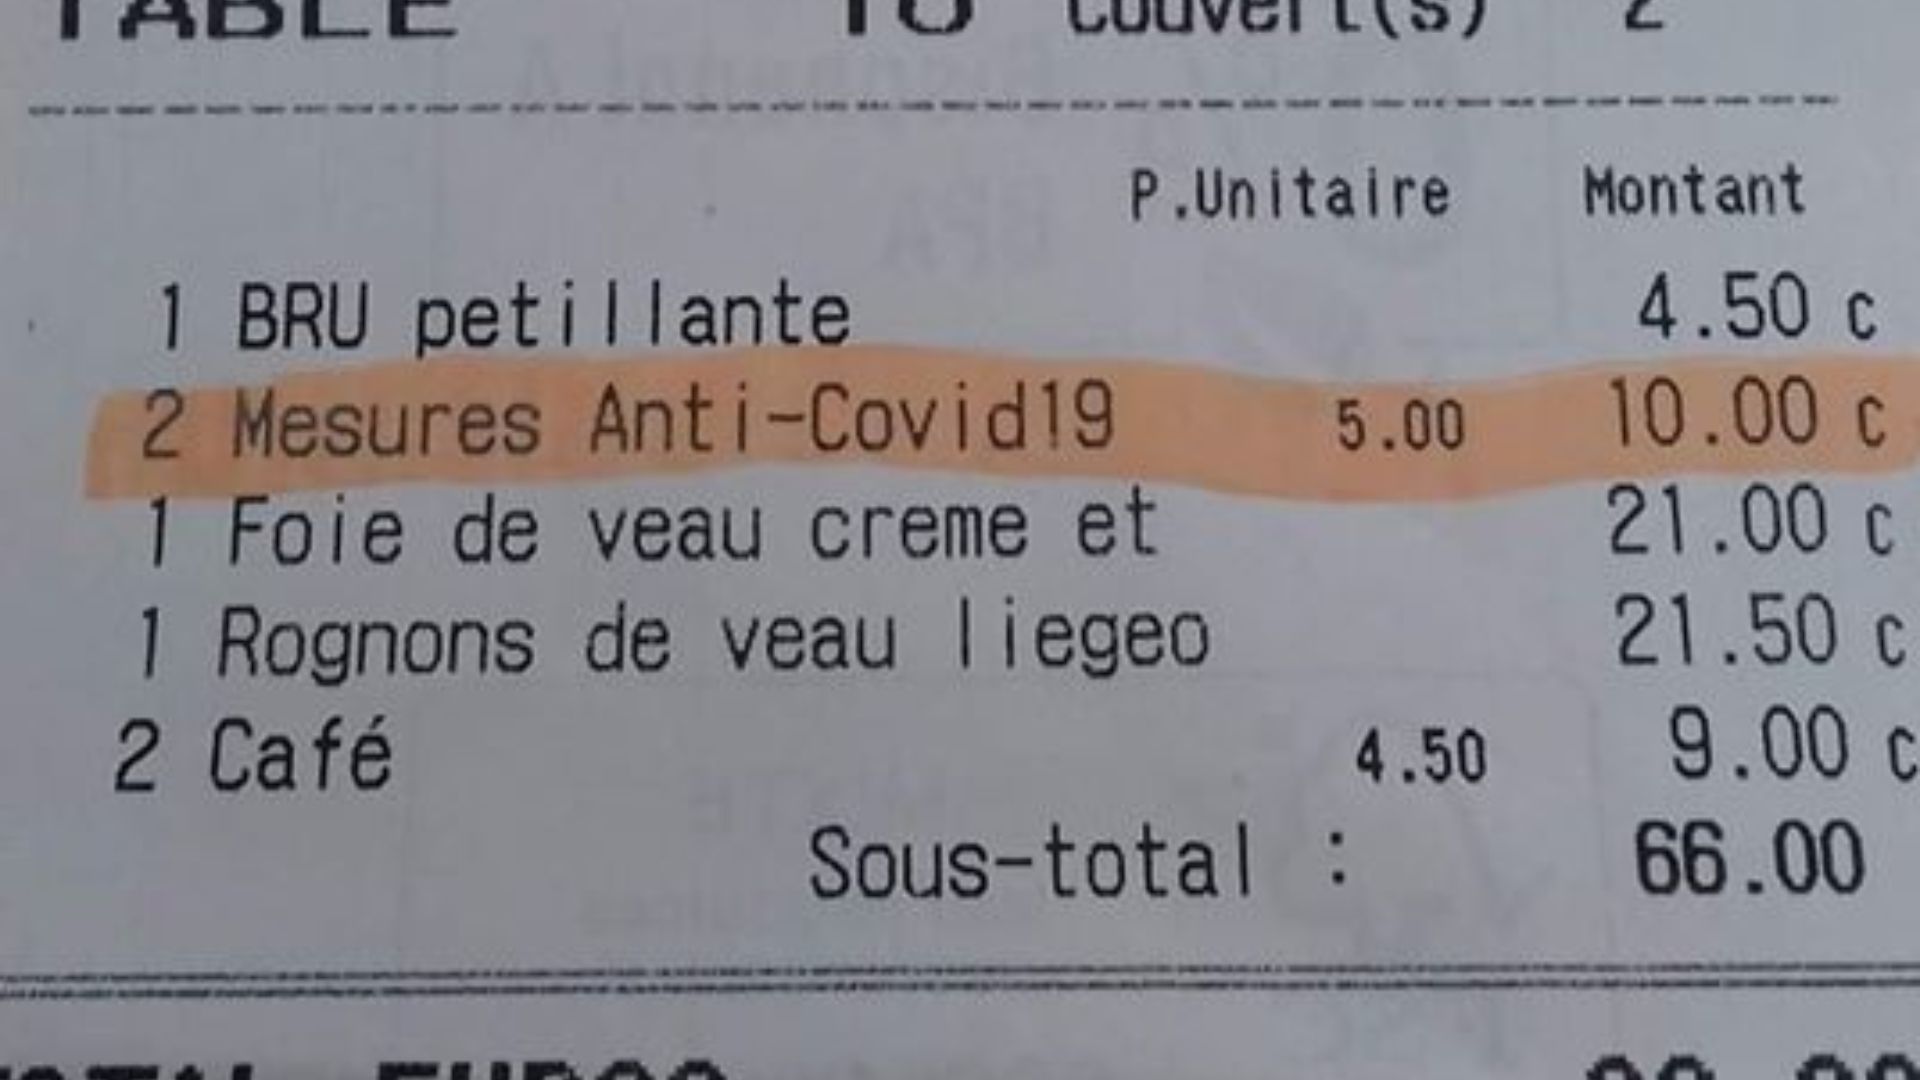 Un supplément "mesures Anti-Covid19" dans un restaurant bruxellois : "Cela a duré 10 jours et les clients comprenaient"